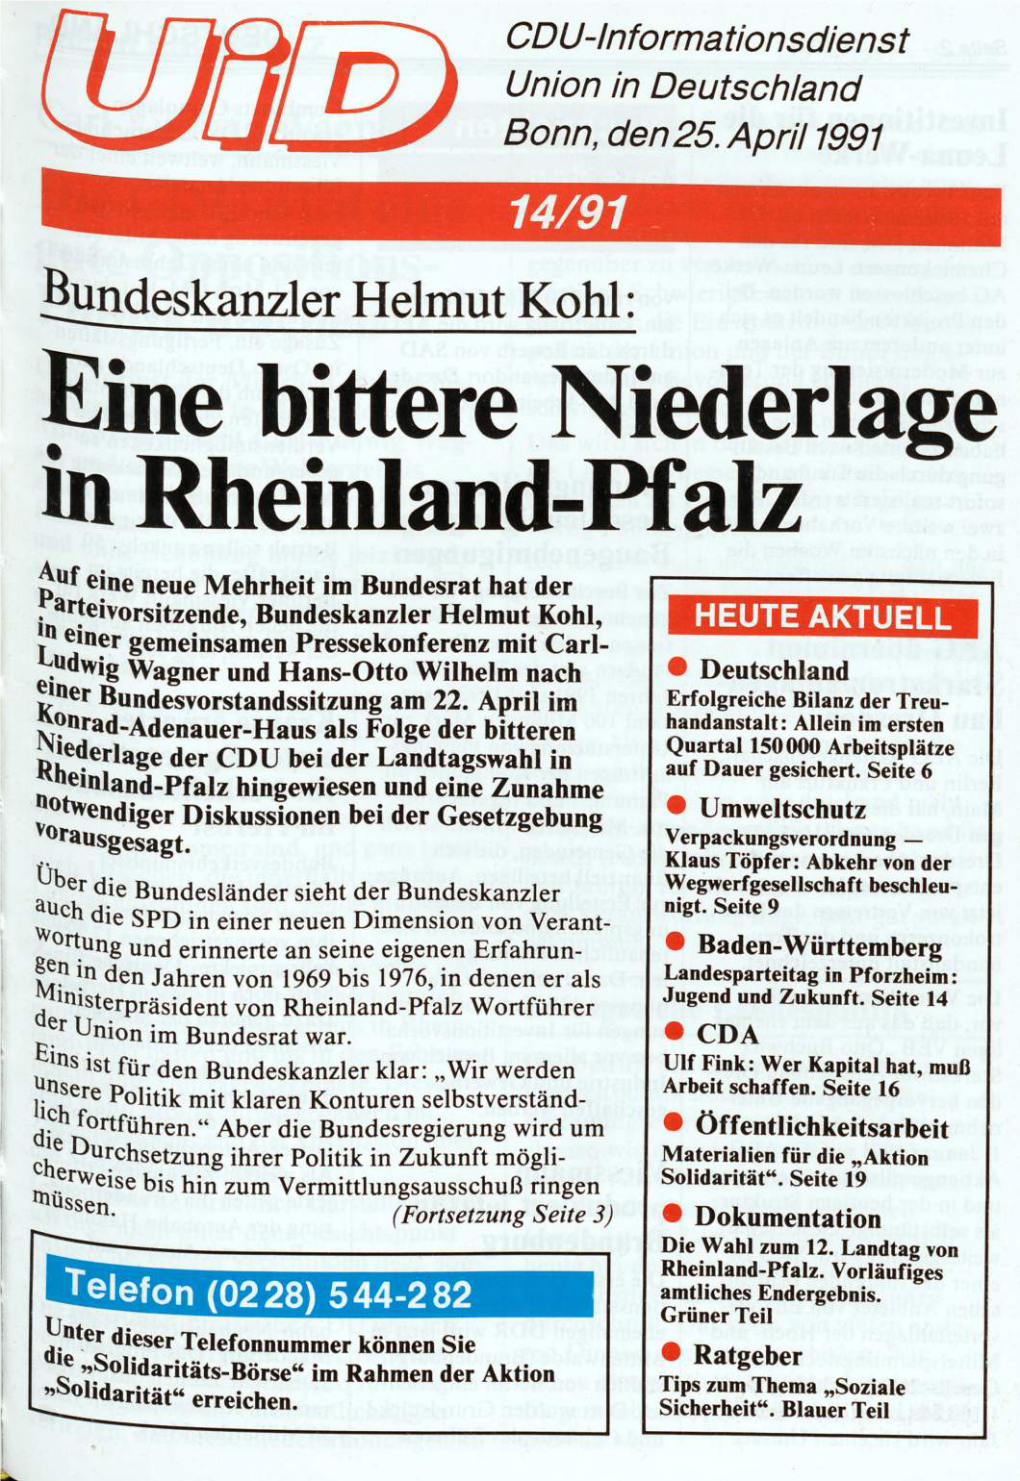 UID 1991 Nr. 14, Union in Deutschland